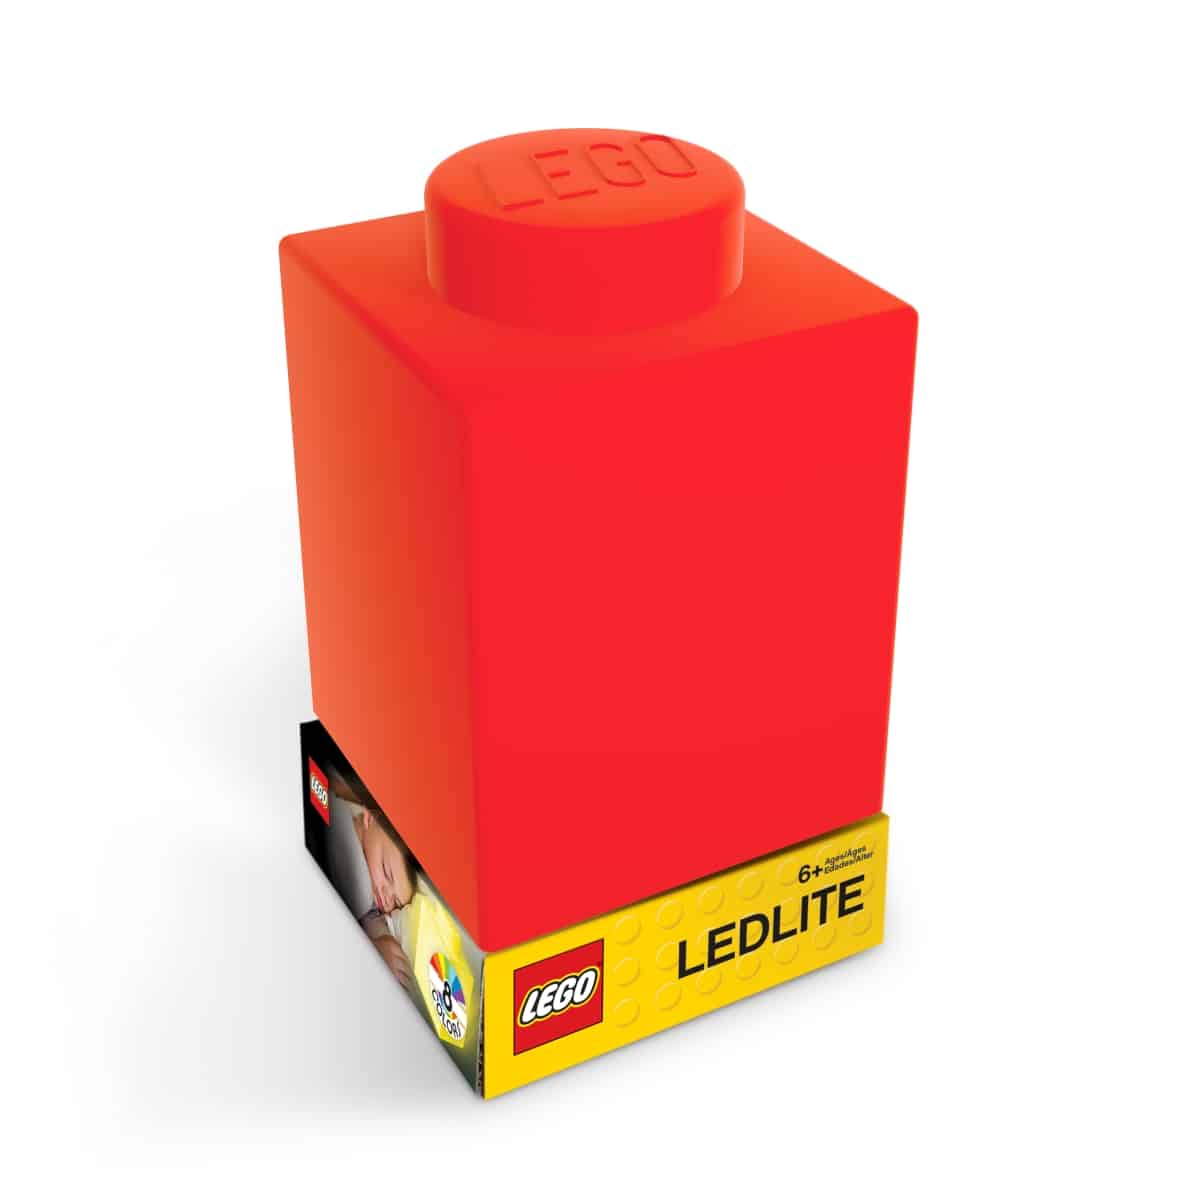 Lego 5007231 1X1 Nachtlampje Rood